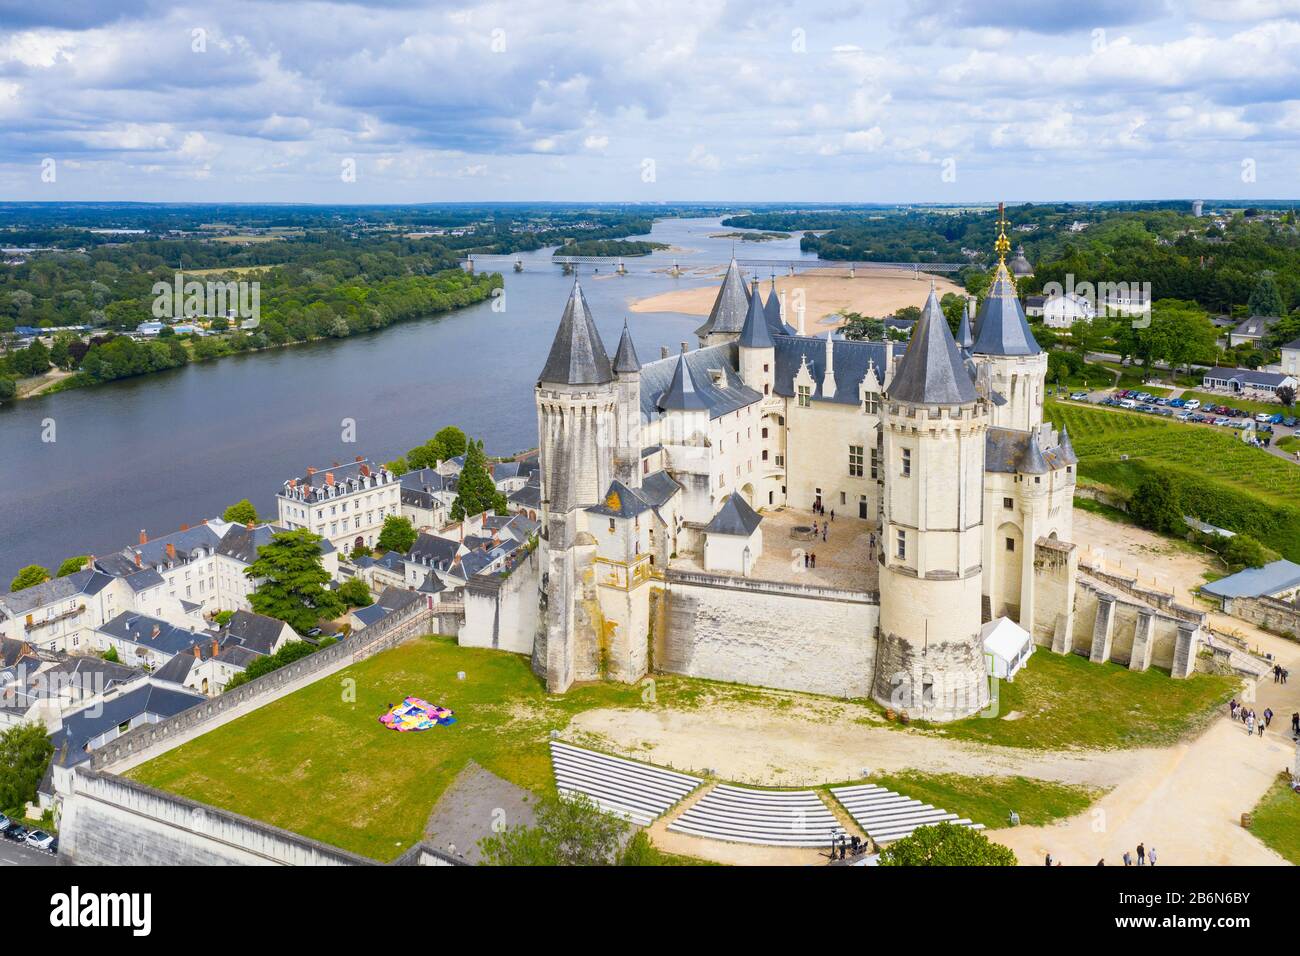 Vue aérienne sur le château et la vallée de la loire, le château de France.Saumur a été construit au dixième siècle et reconstruit à la fin du douzième siècle Banque D'Images